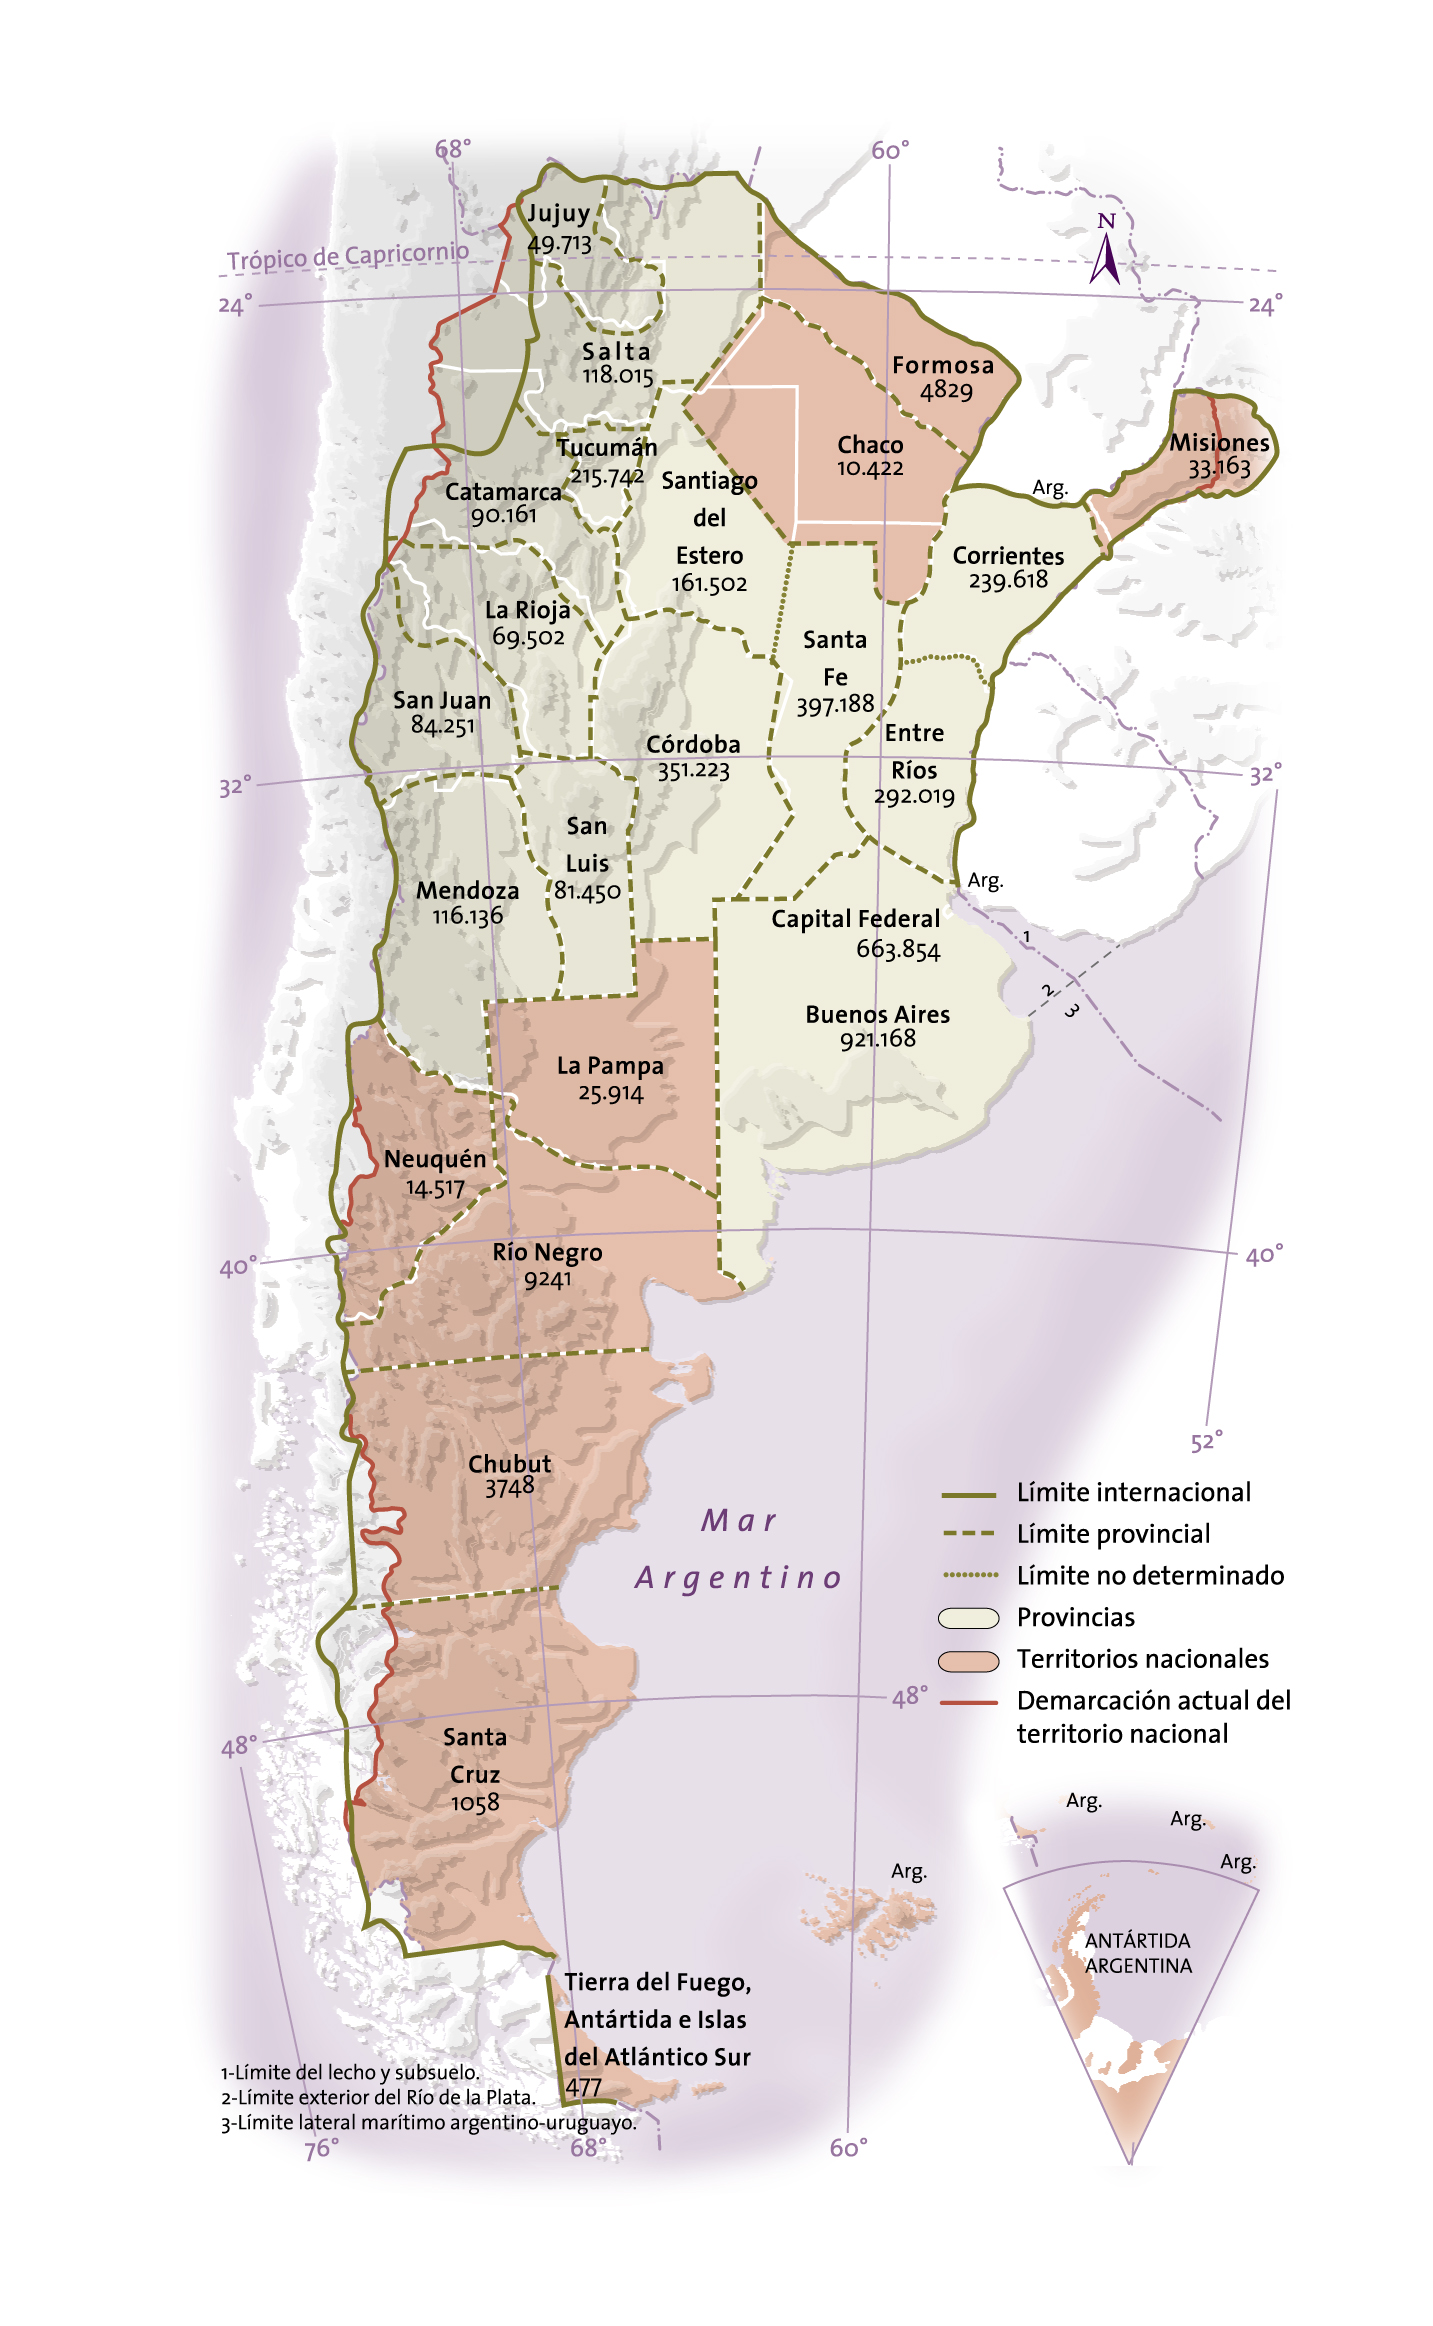 República Argentina: límites de provincias y territorios nacionales, y distribución de población (1887-1895)